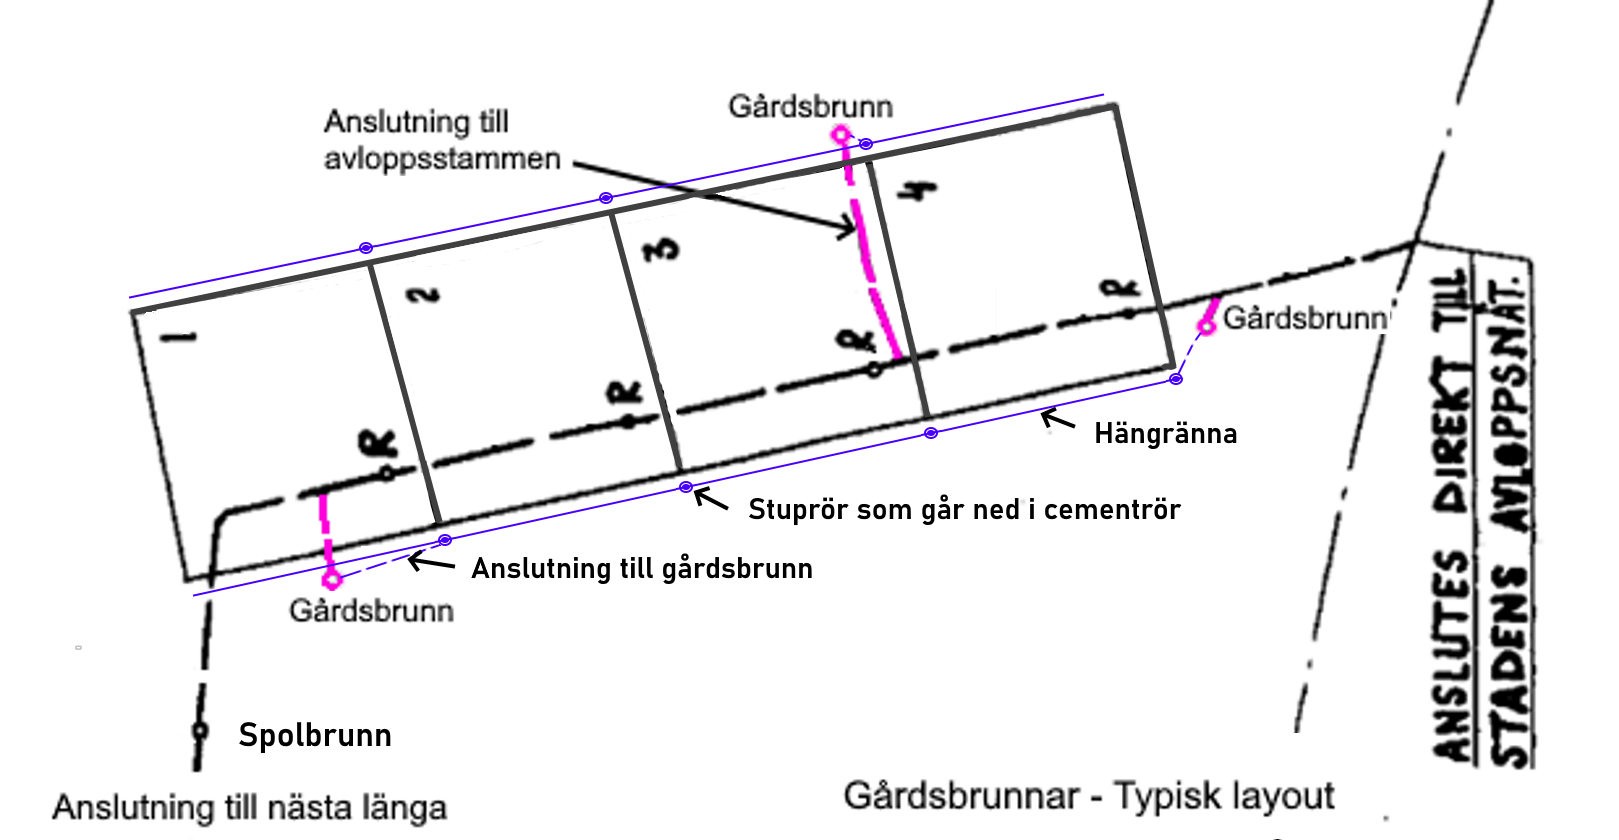 Gårdsbrynnar - layout